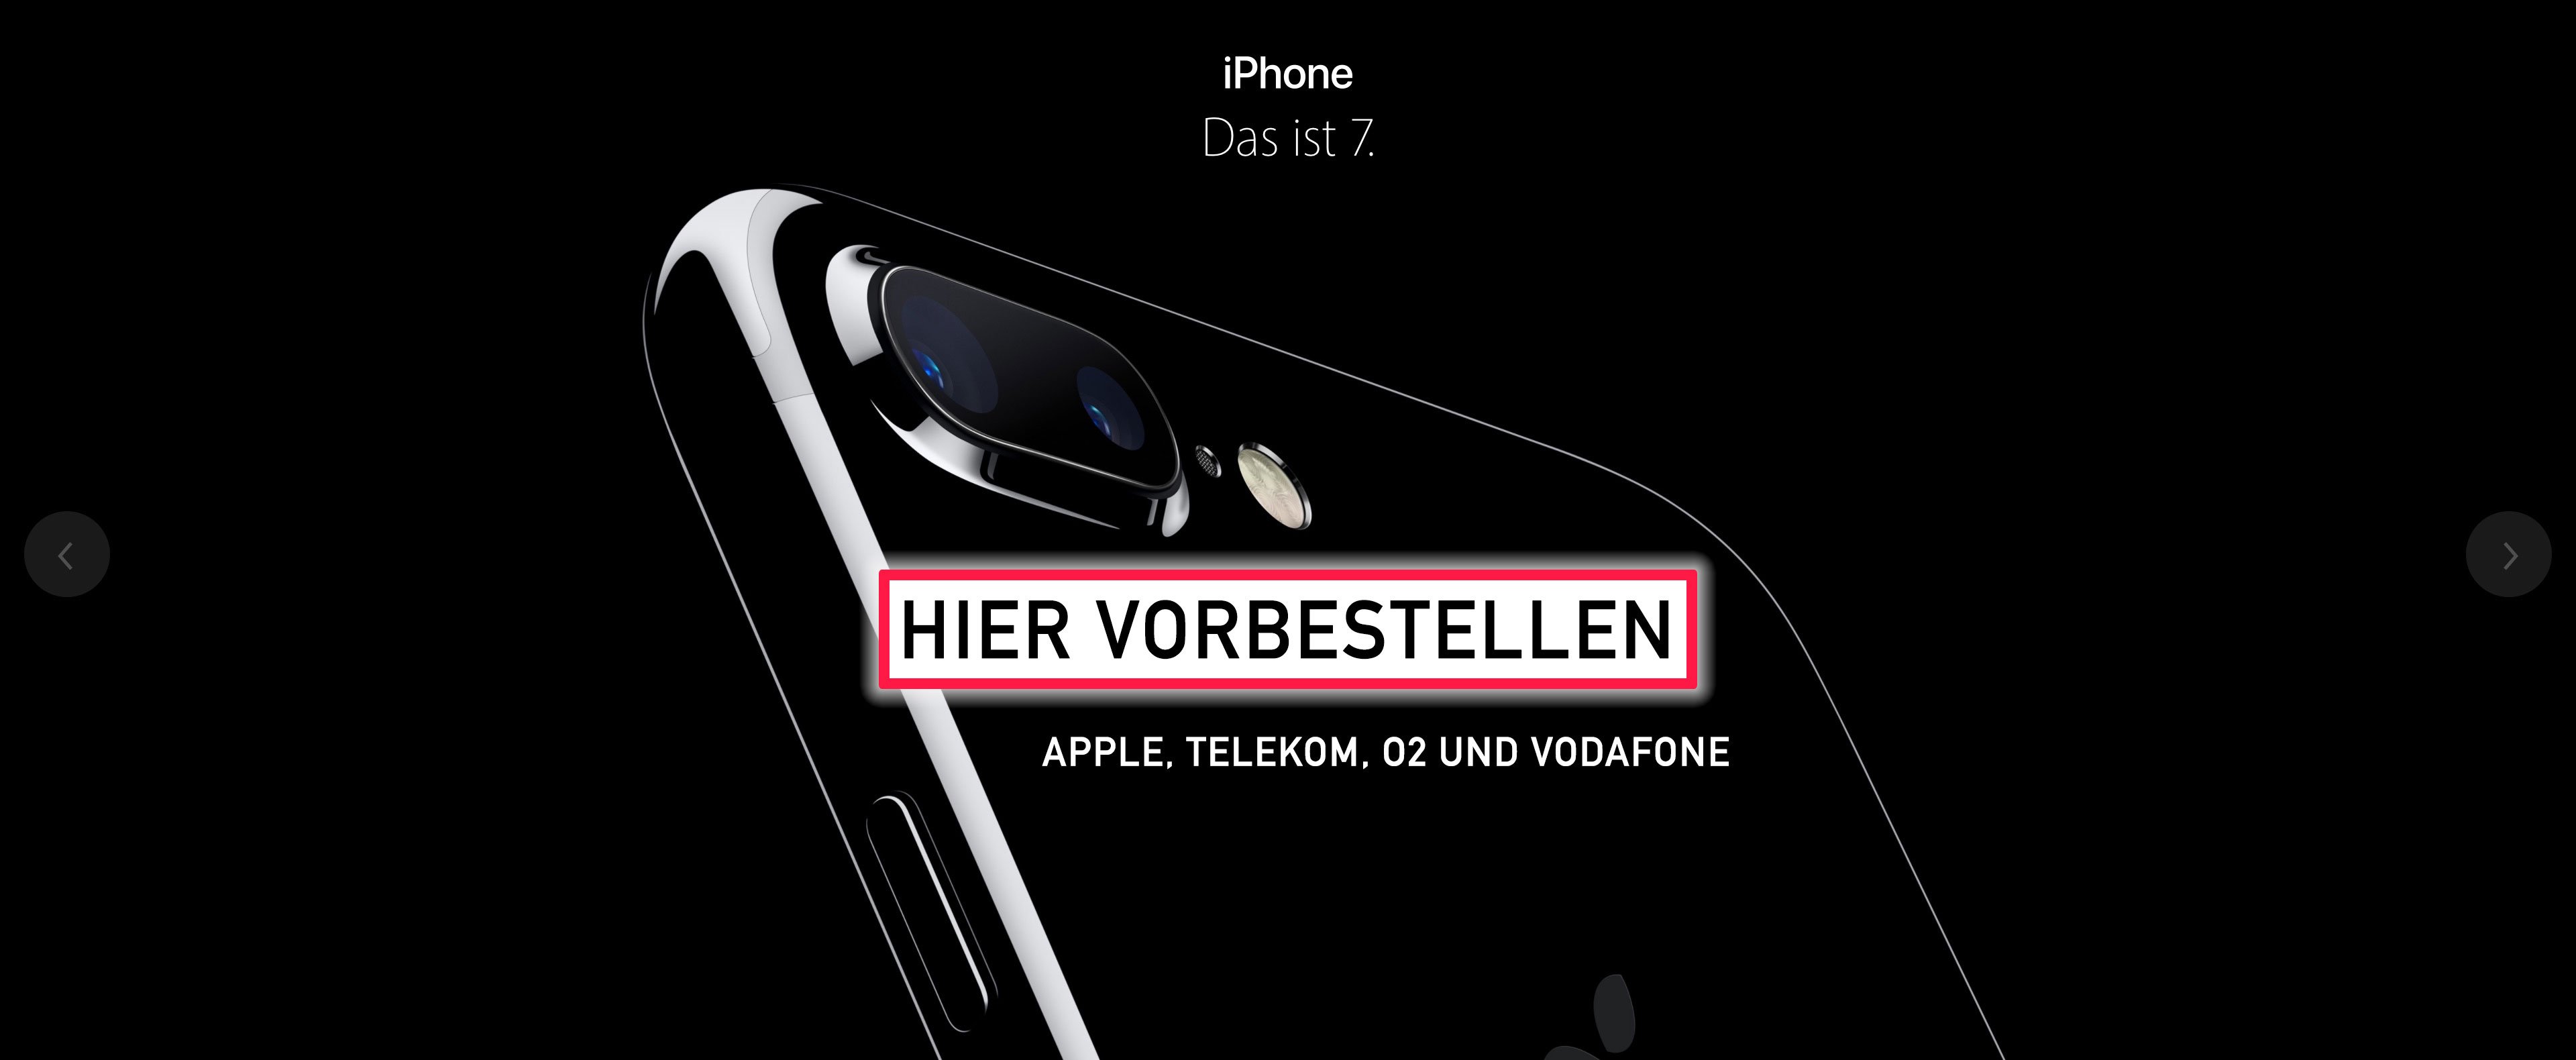 iPhone 7 vorbestellen: iPhone 7 bei O2, Telekom und Vodafone jetzt online erhältlich! 8